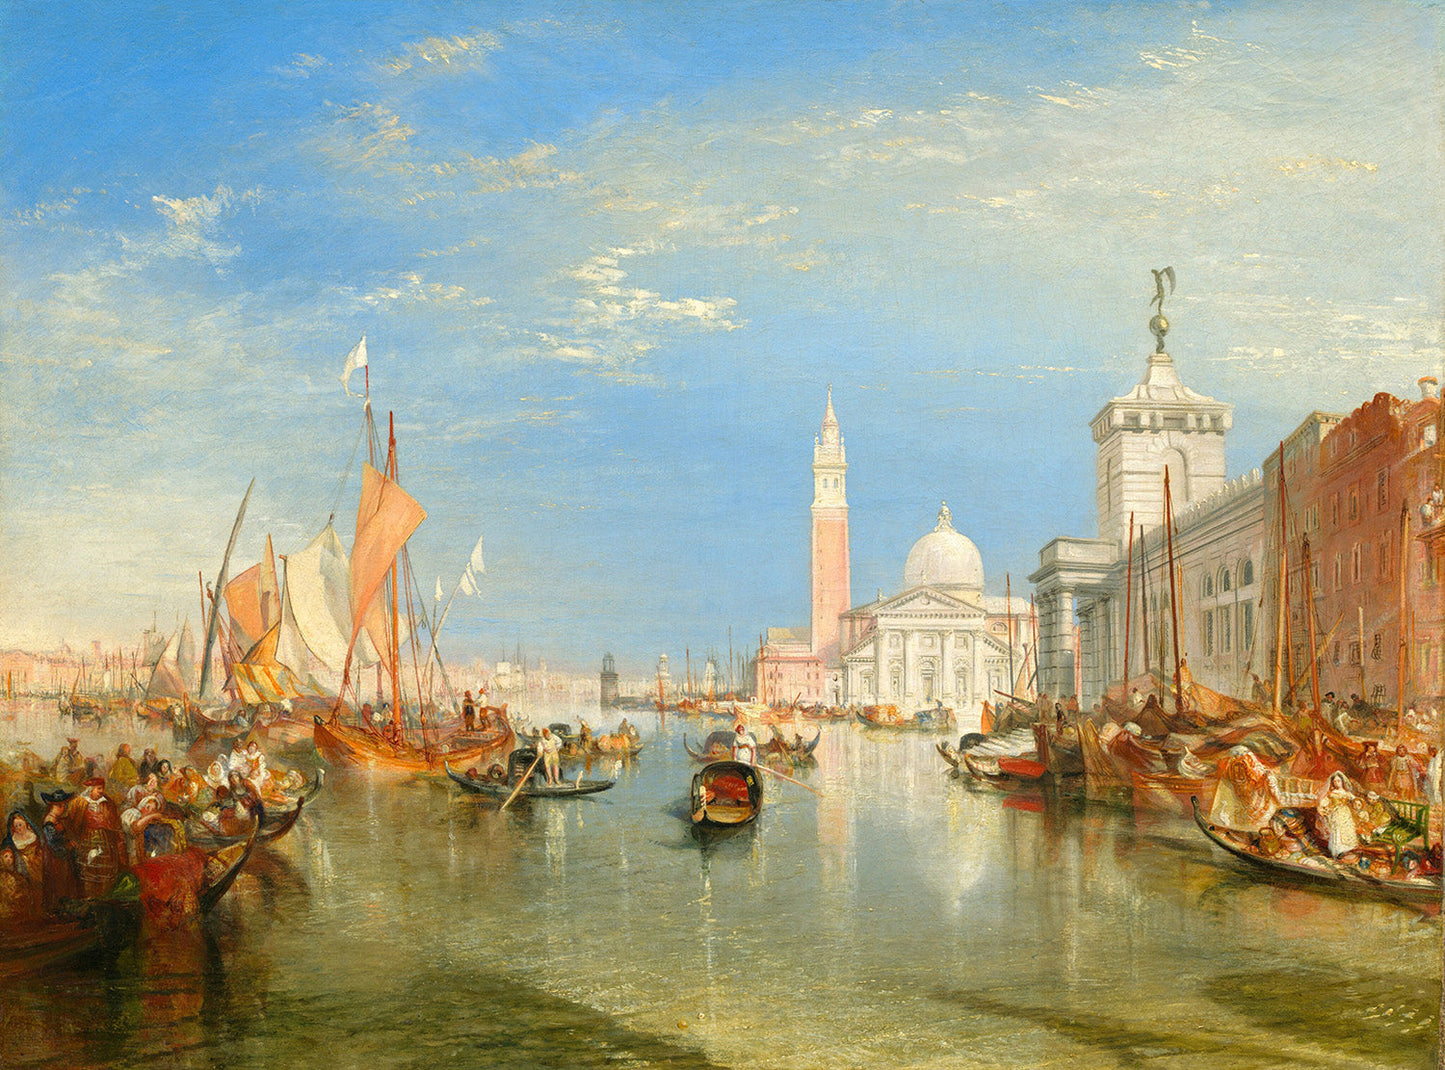 Venice: The Dogana and San Giorgio Maggiore by Joseph Mallord William Turner Art Print